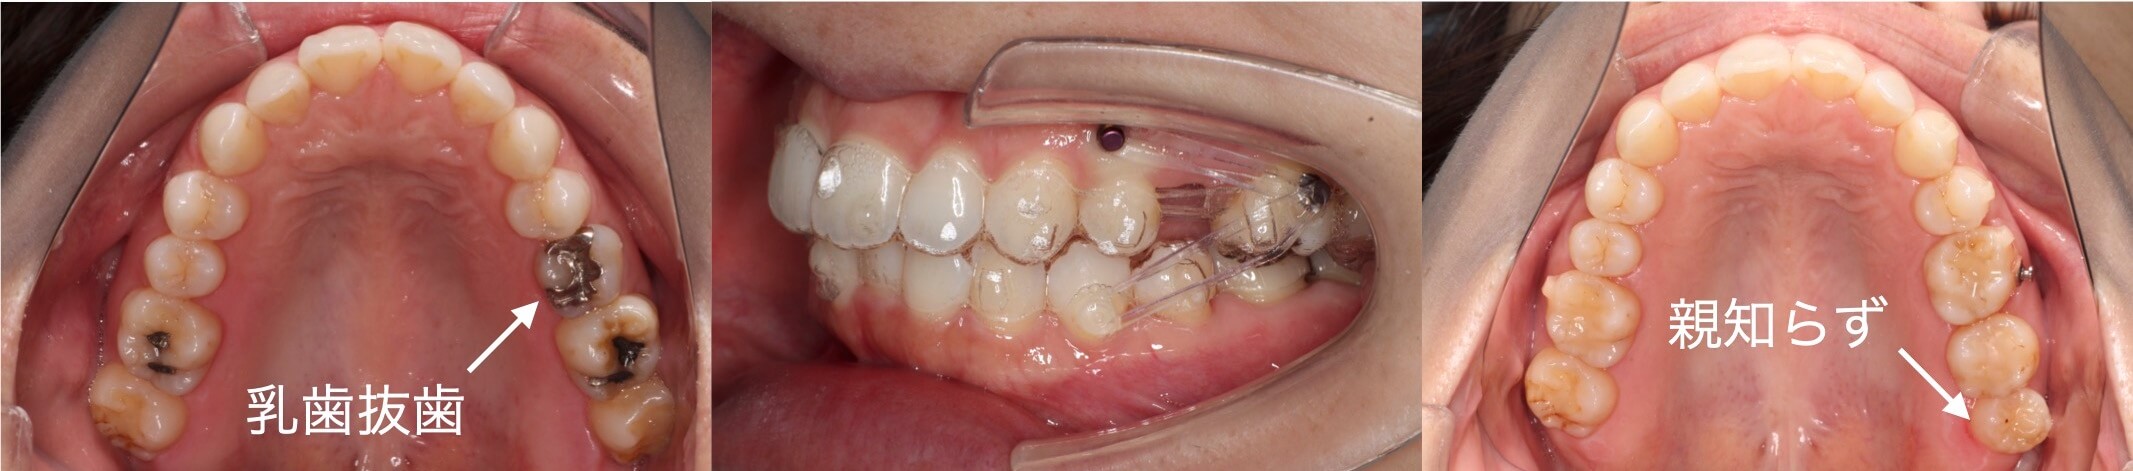 インビザライン・乳歯抜歯治療例